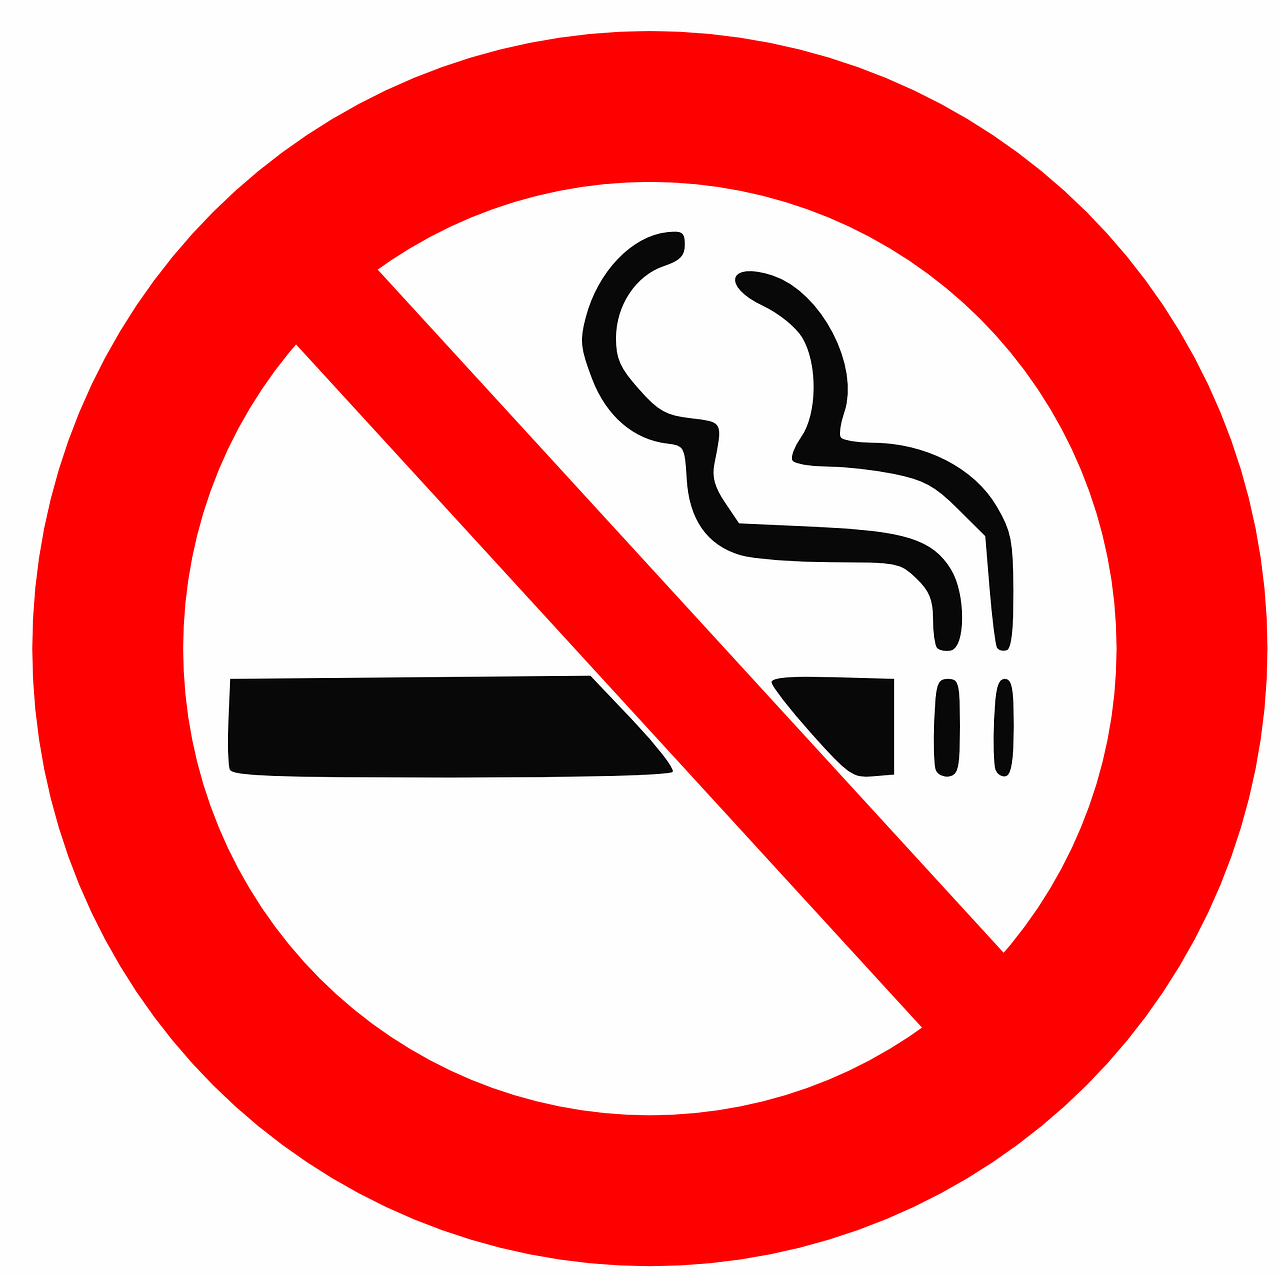 Nerūkyti, Ženklas, Cigaretės, Draudžiama, Rūkymas, Sustabdyti, Draudžiama, Neleidžiama, Simbolis, Piktograma